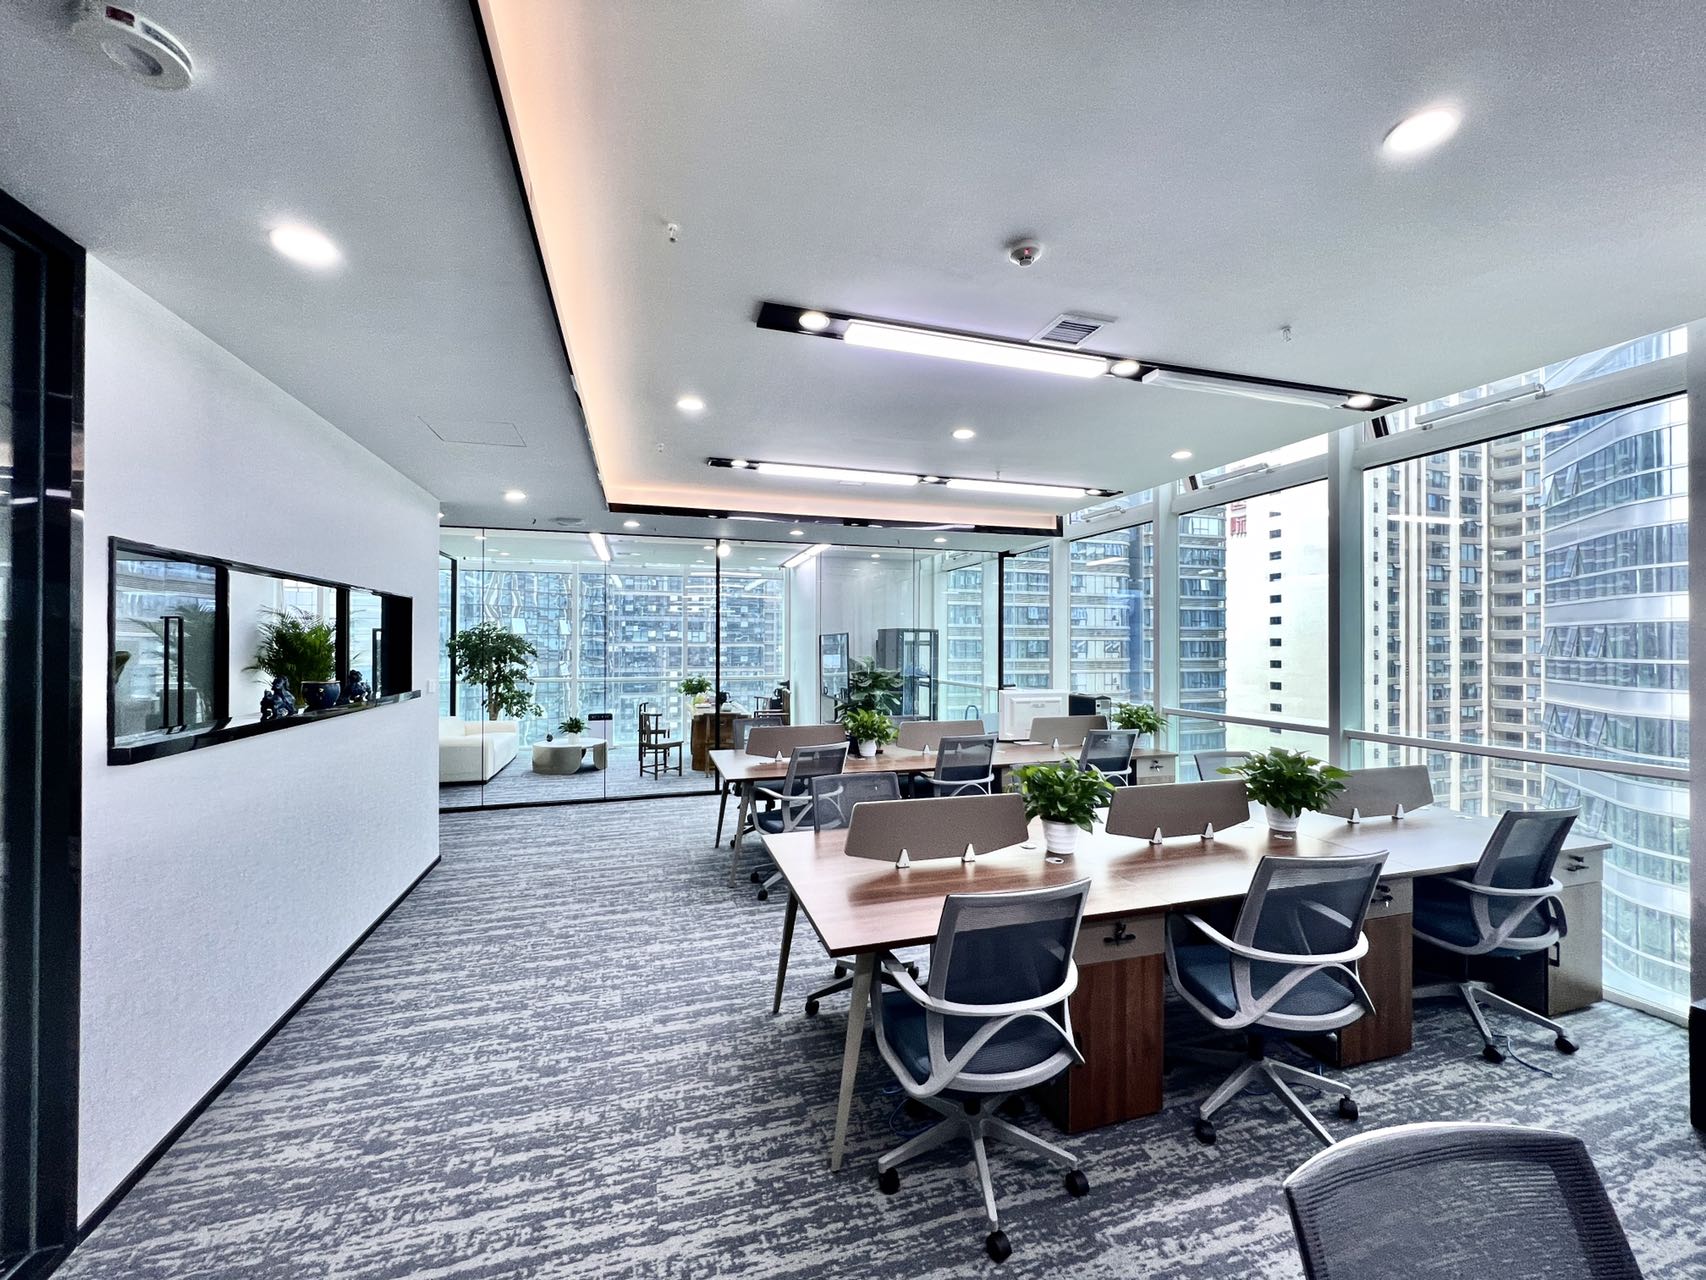 高新区天府三街莱普敦中心精装450平办公室带家具 户型方正 采光通透